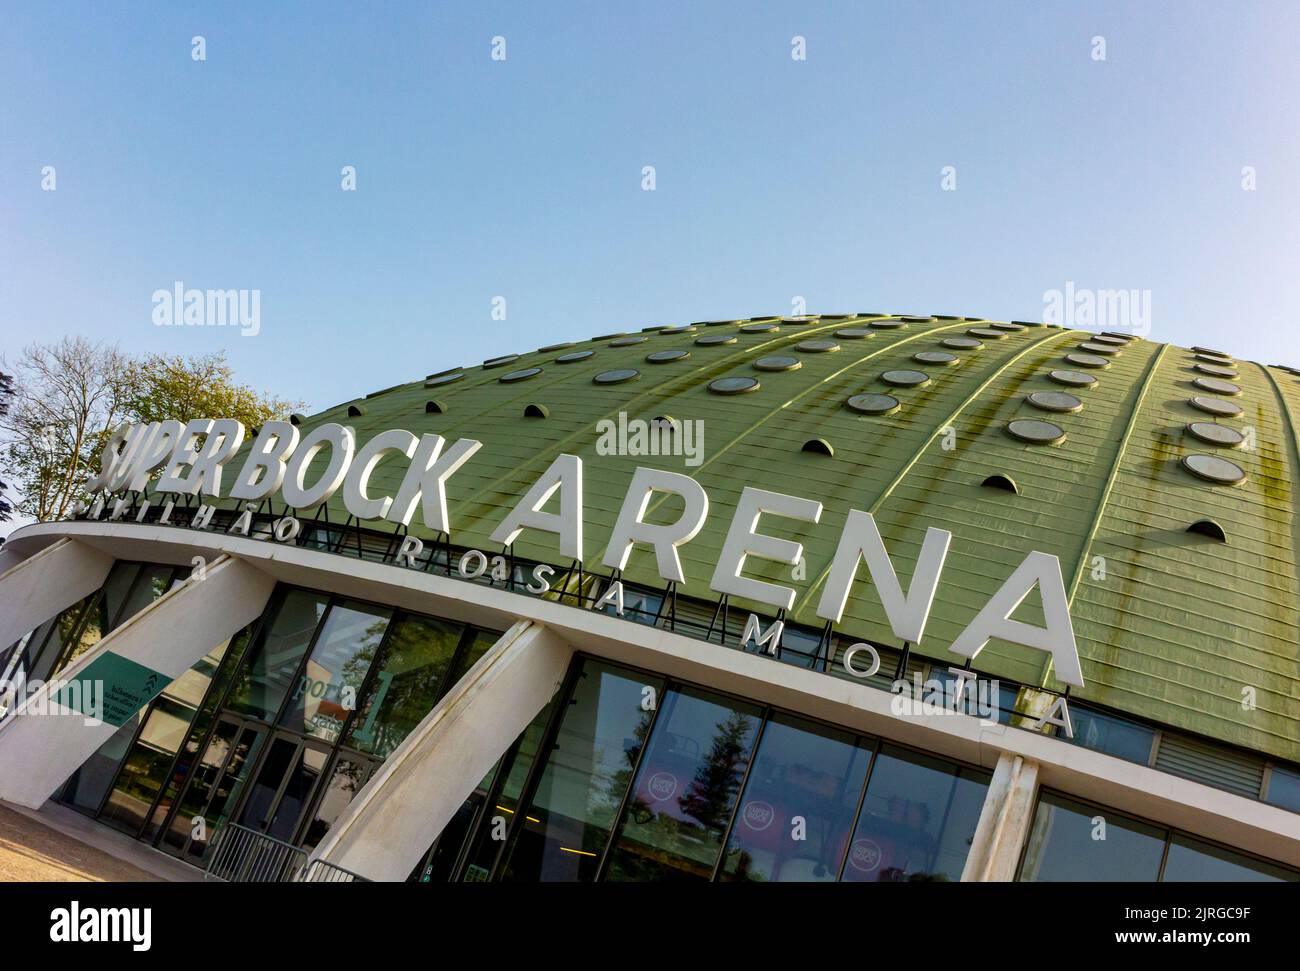 La Super Bock Arena o Pavilhão Rosa Mota un'arena culturale e sportiva a Porto, Portogallo, costruita originariamente nel 1954 e restaurata nel 2019. Foto Stock